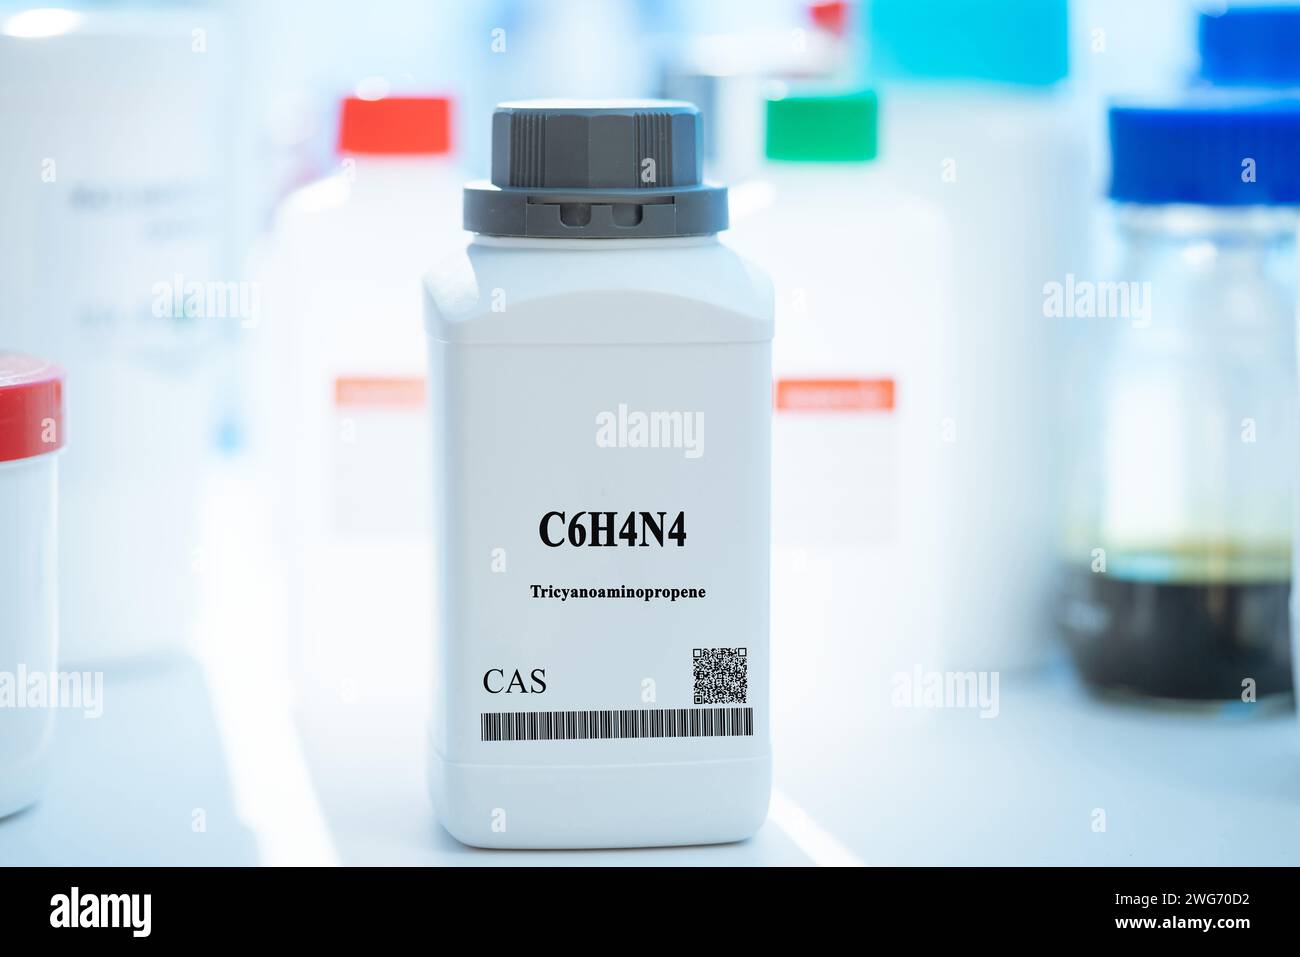 Sostanza chimica CAS tricyanoaminopropene C6H4N4 in imballaggi di plastica bianca da laboratorio Foto Stock